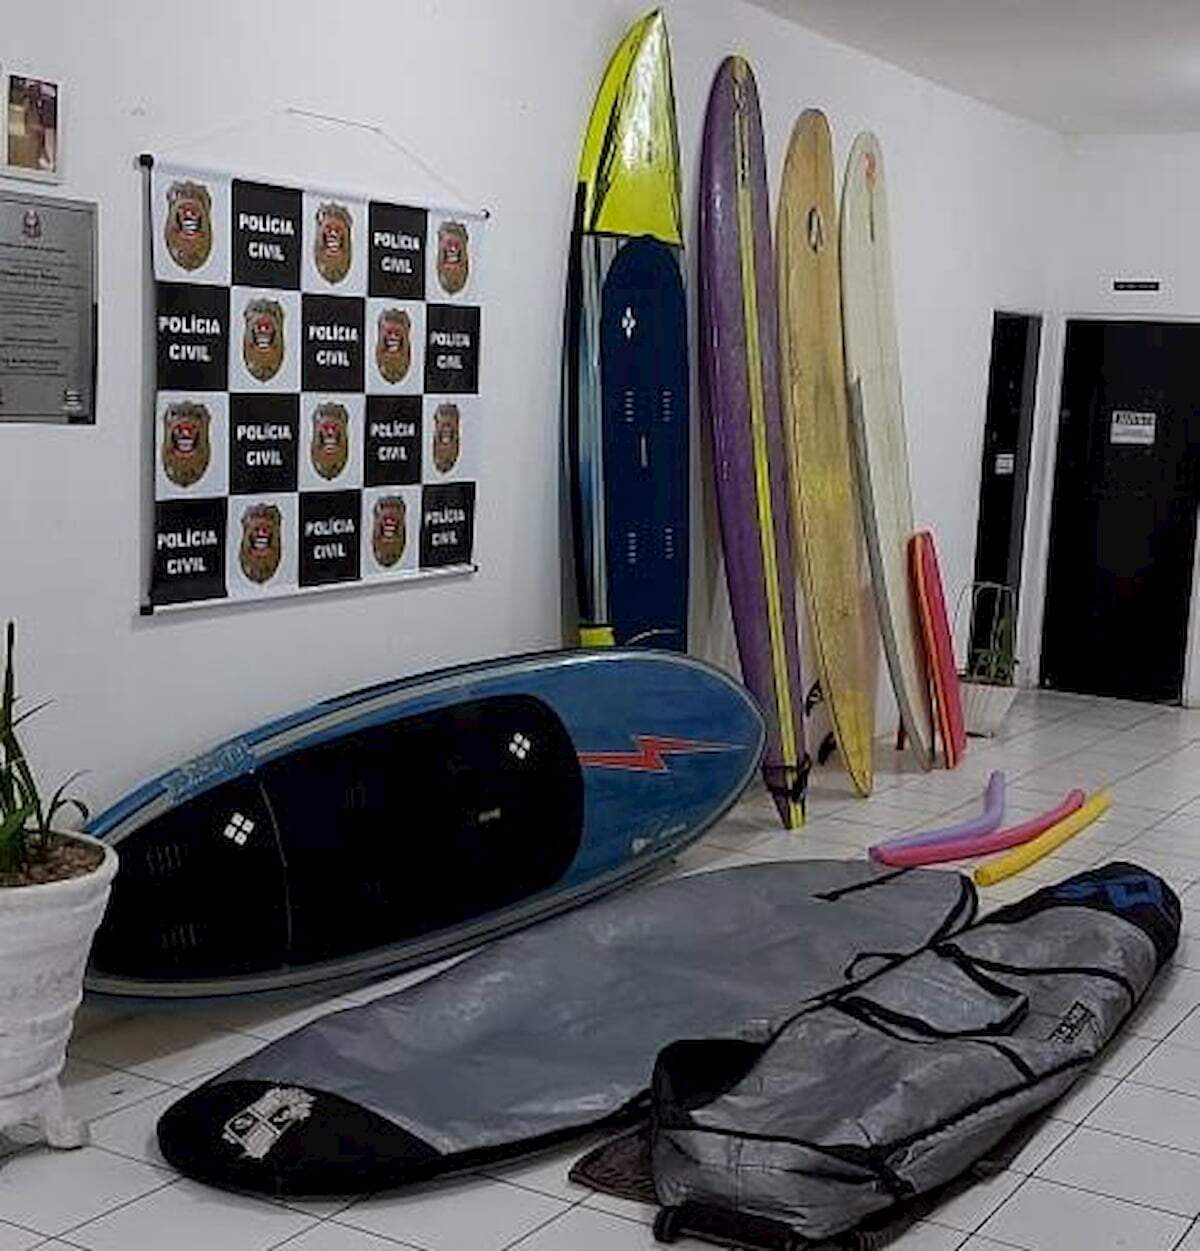 Seis pranchas de surf foram furtadas de um edifício em São Vicente